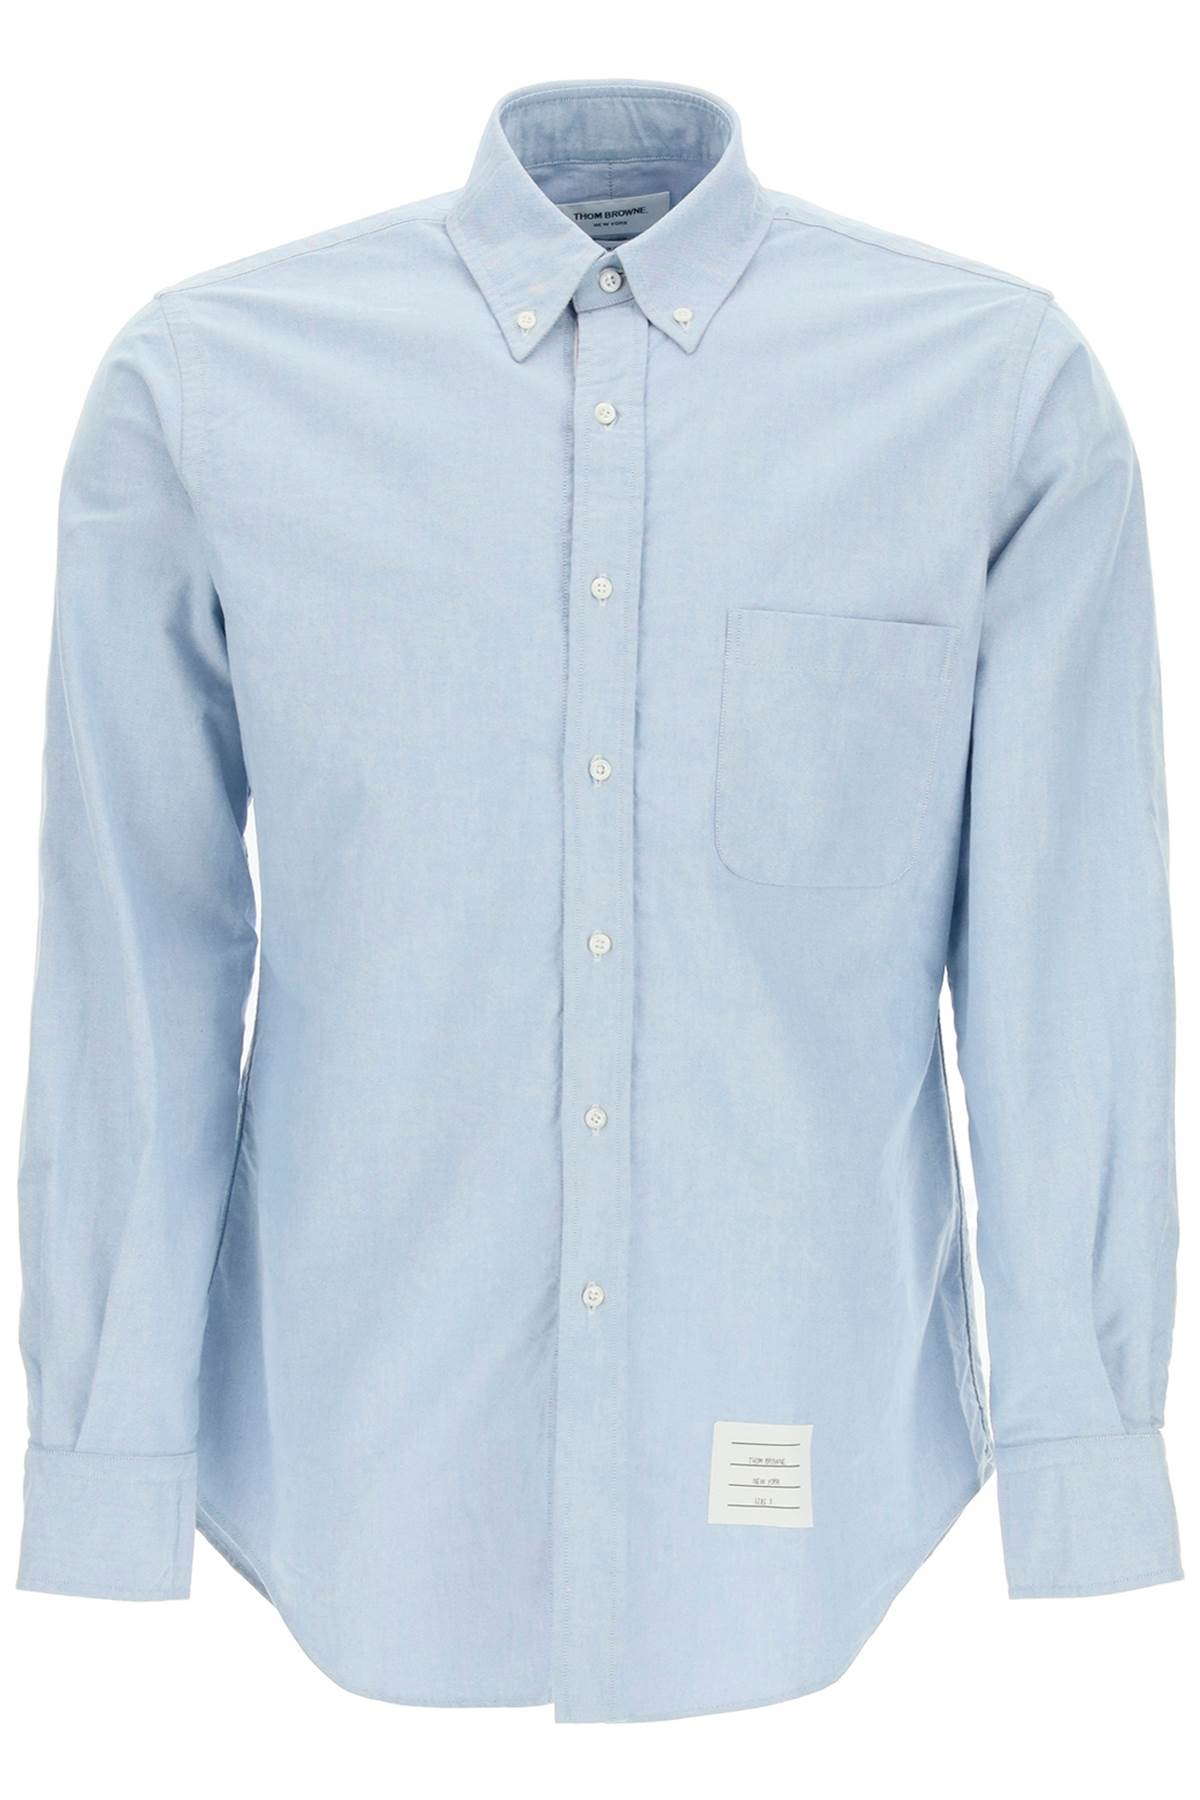 Oxford Cotton Button Down Shirt - 1